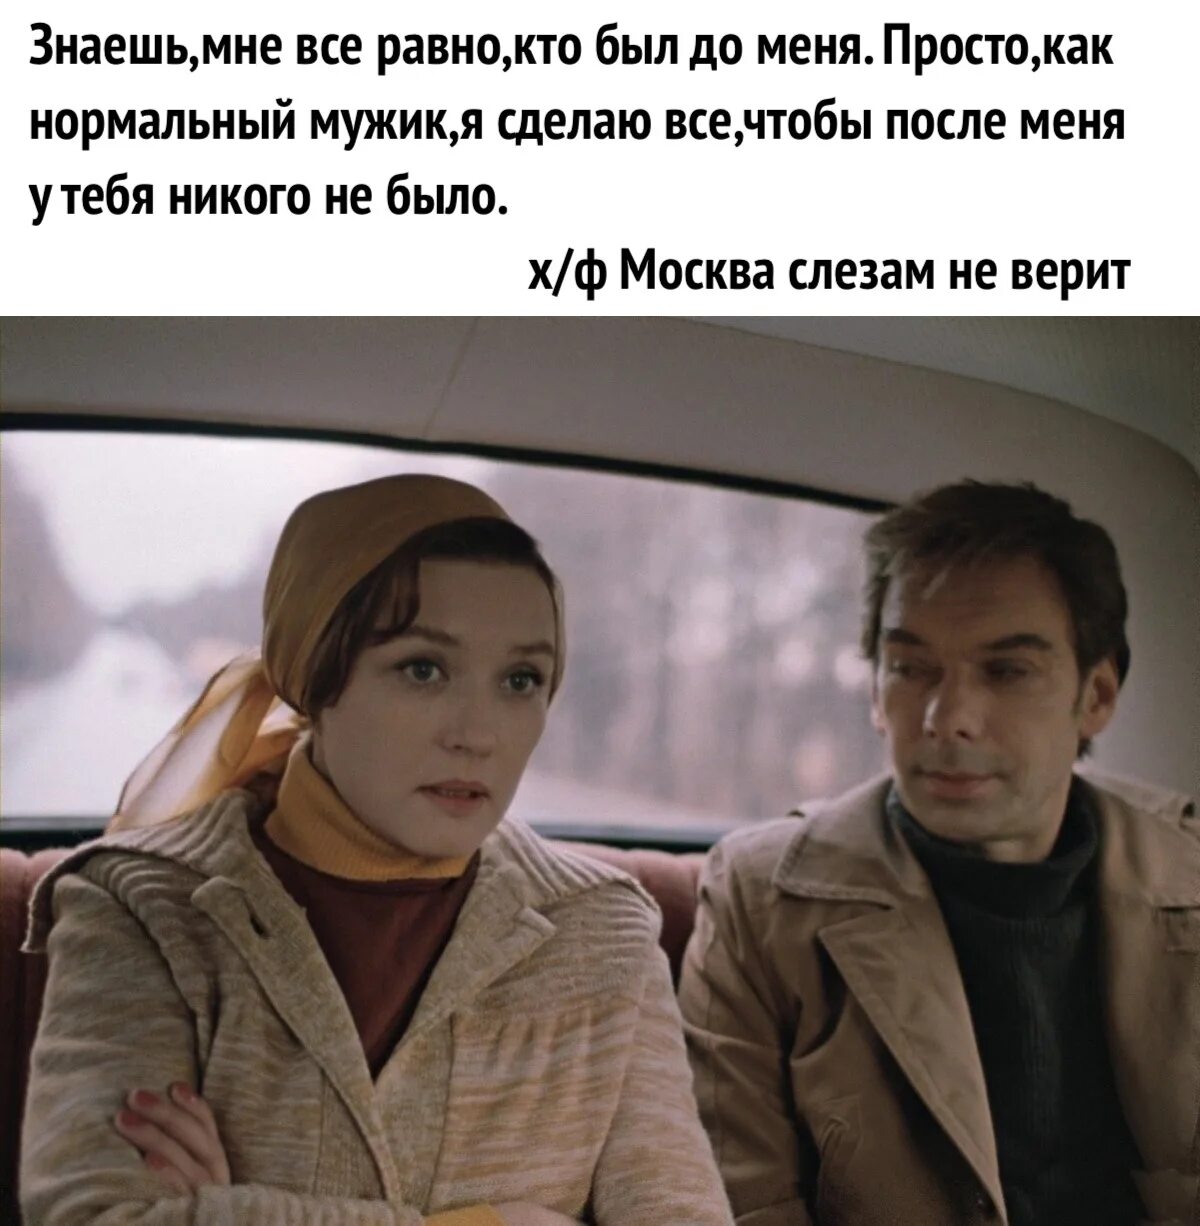 Цитаты из Москва слезам не верит. Москва слезам не верит цитаты. Никто не хотел решать